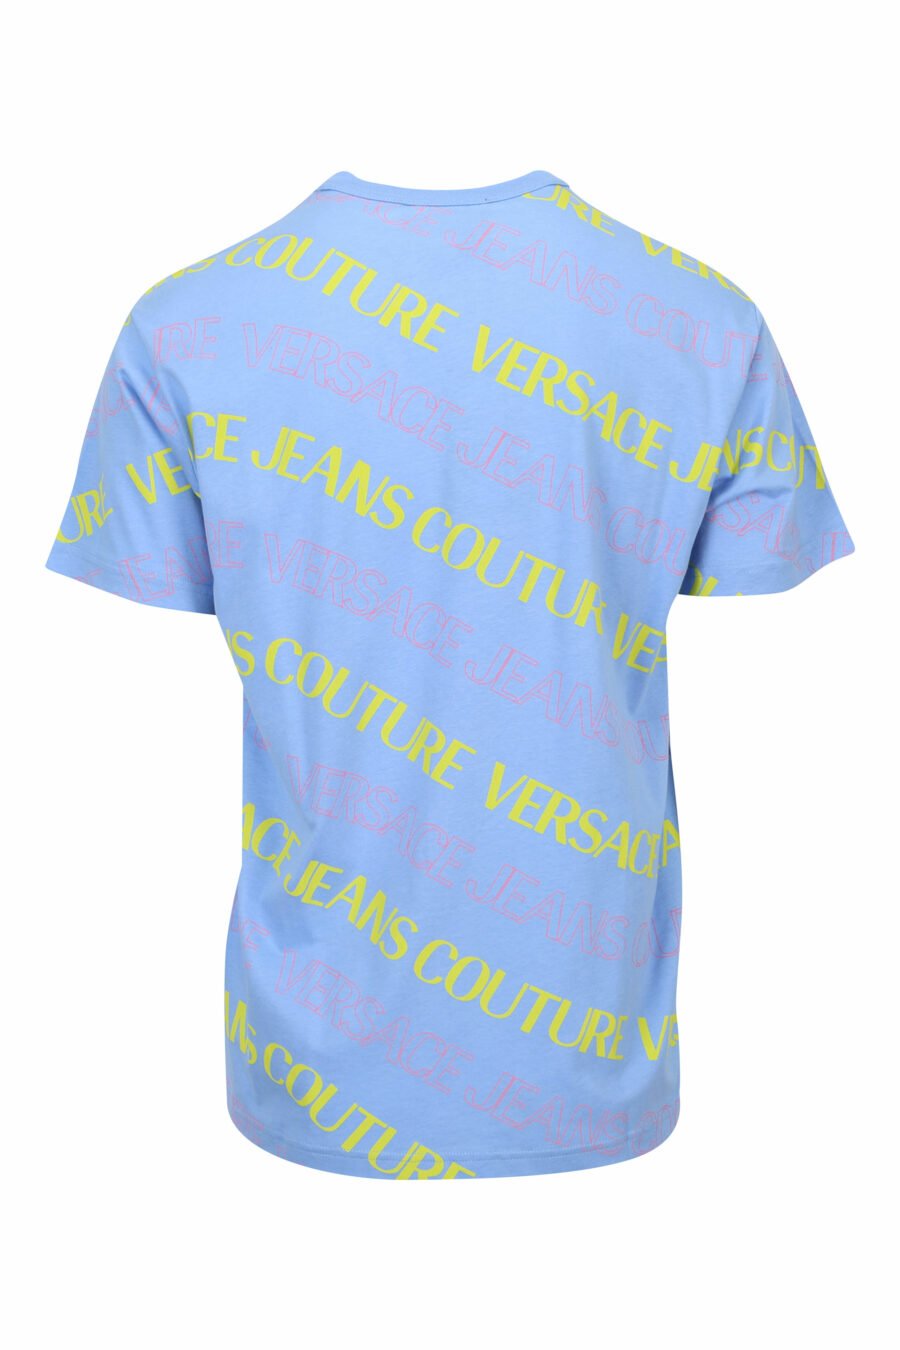 Camiseta azul "all over logo" multicolor en diagonal - 8052019587722 1